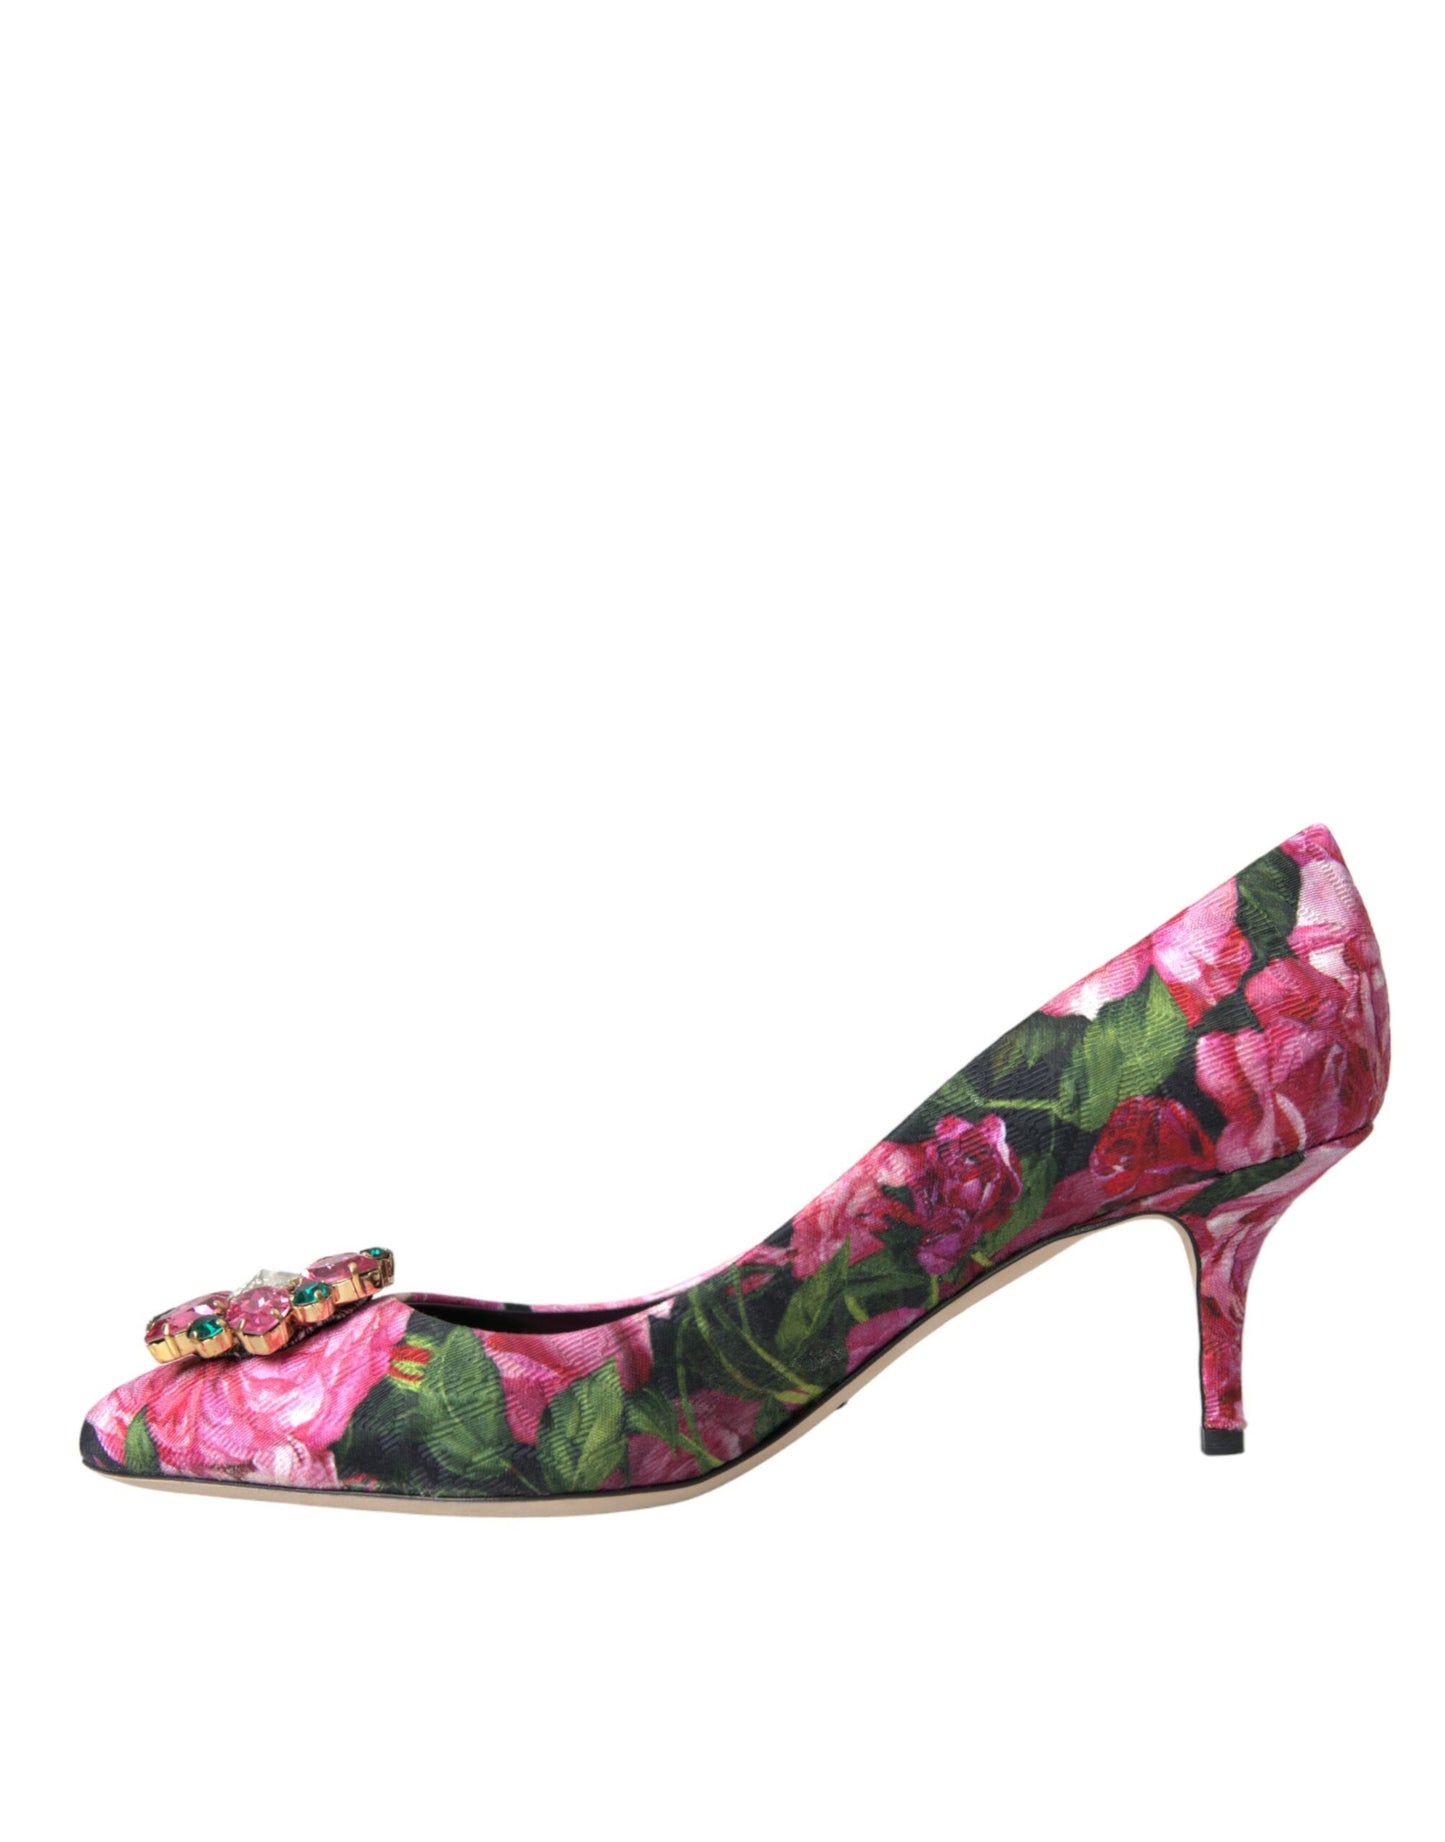 Multicolor Floral Brocade Crystal Heels Pumps Shoes